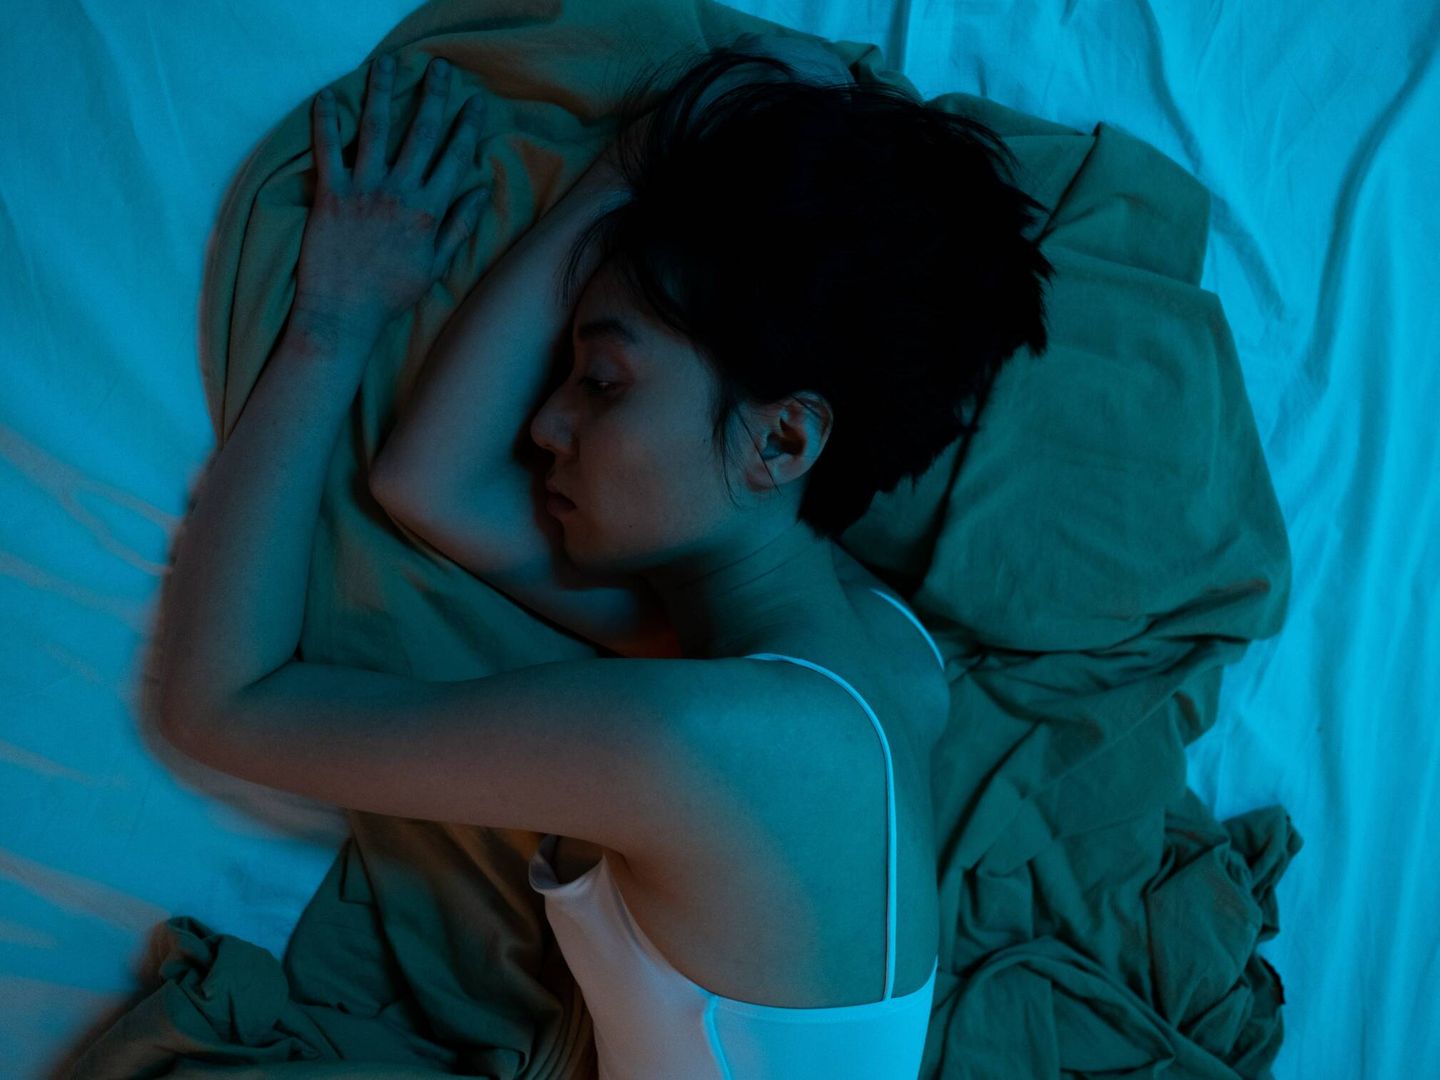 La dificultad para conciliar el sueño o permanecer dormido se asociaron con un mayor riesgo de hipertensión entre las mujeres del estudio. (Pexels)